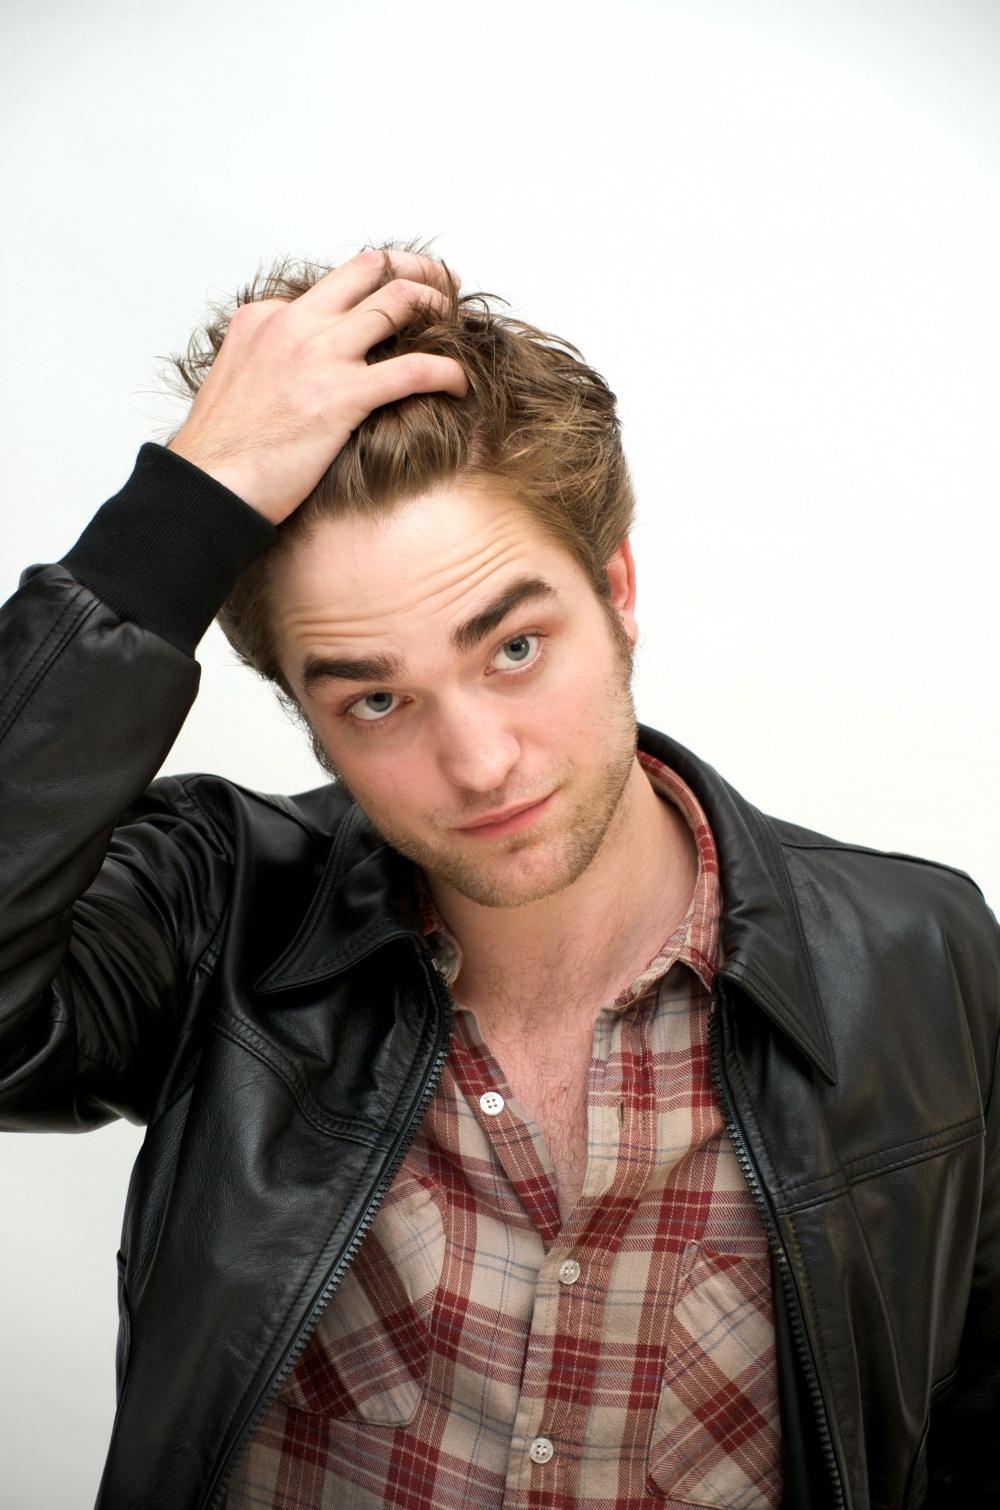 Photo №8912 Robert Pattinson.